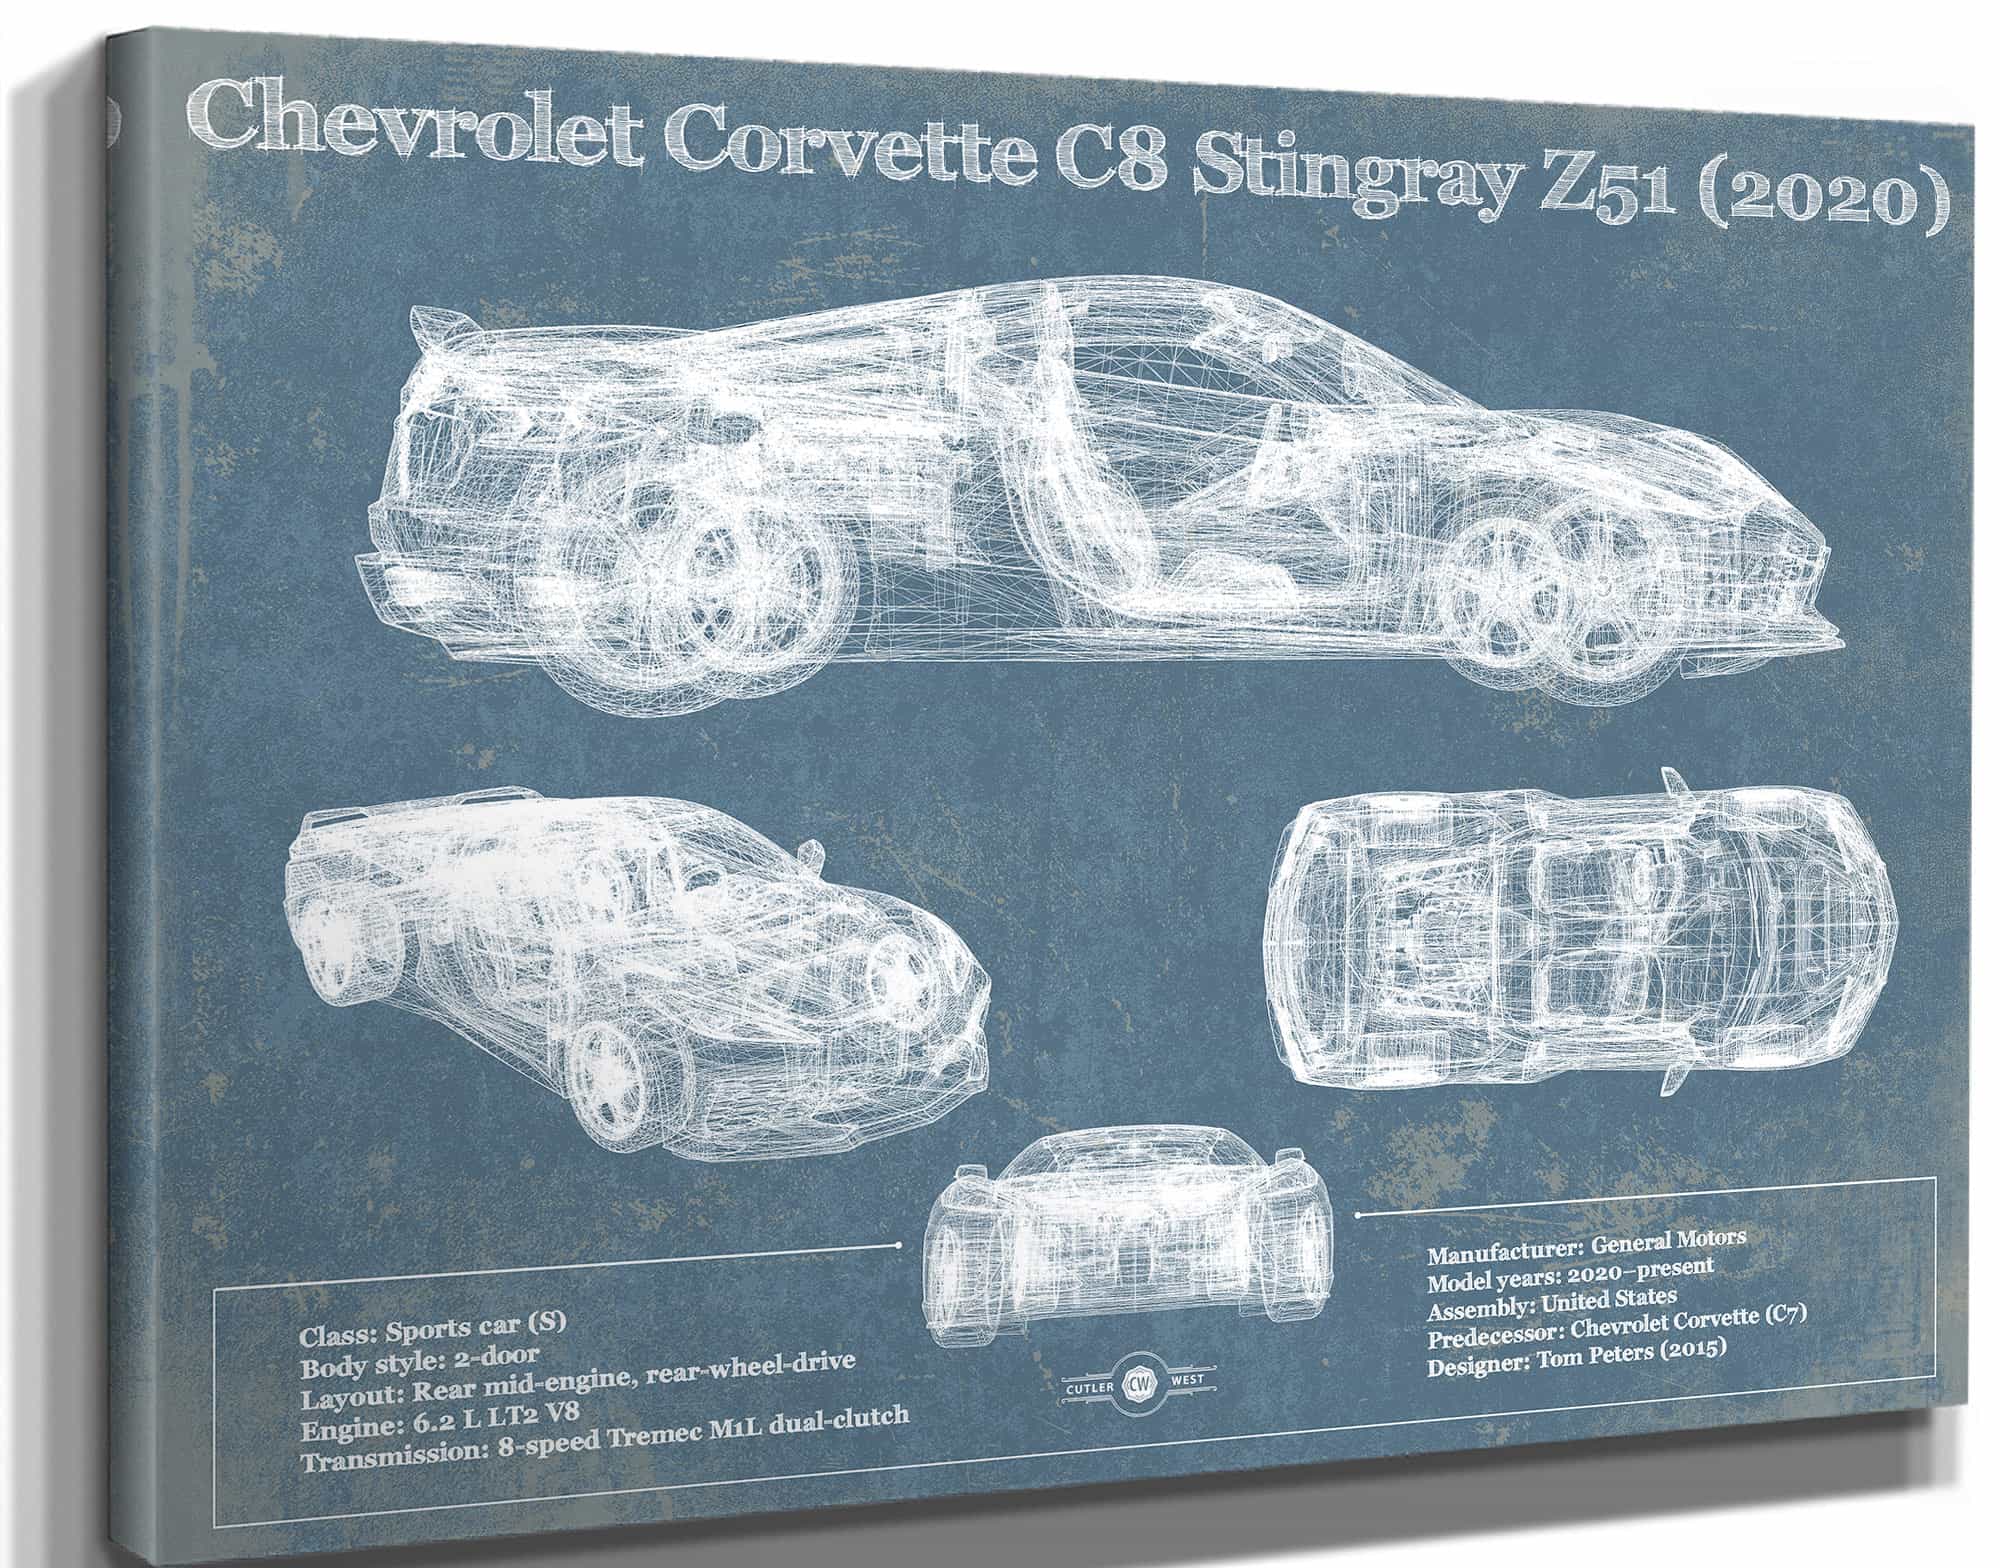 Chevrolet Corvette C8 Stingray Z51 (2020) Blueprint Vintage Auto Patent Print